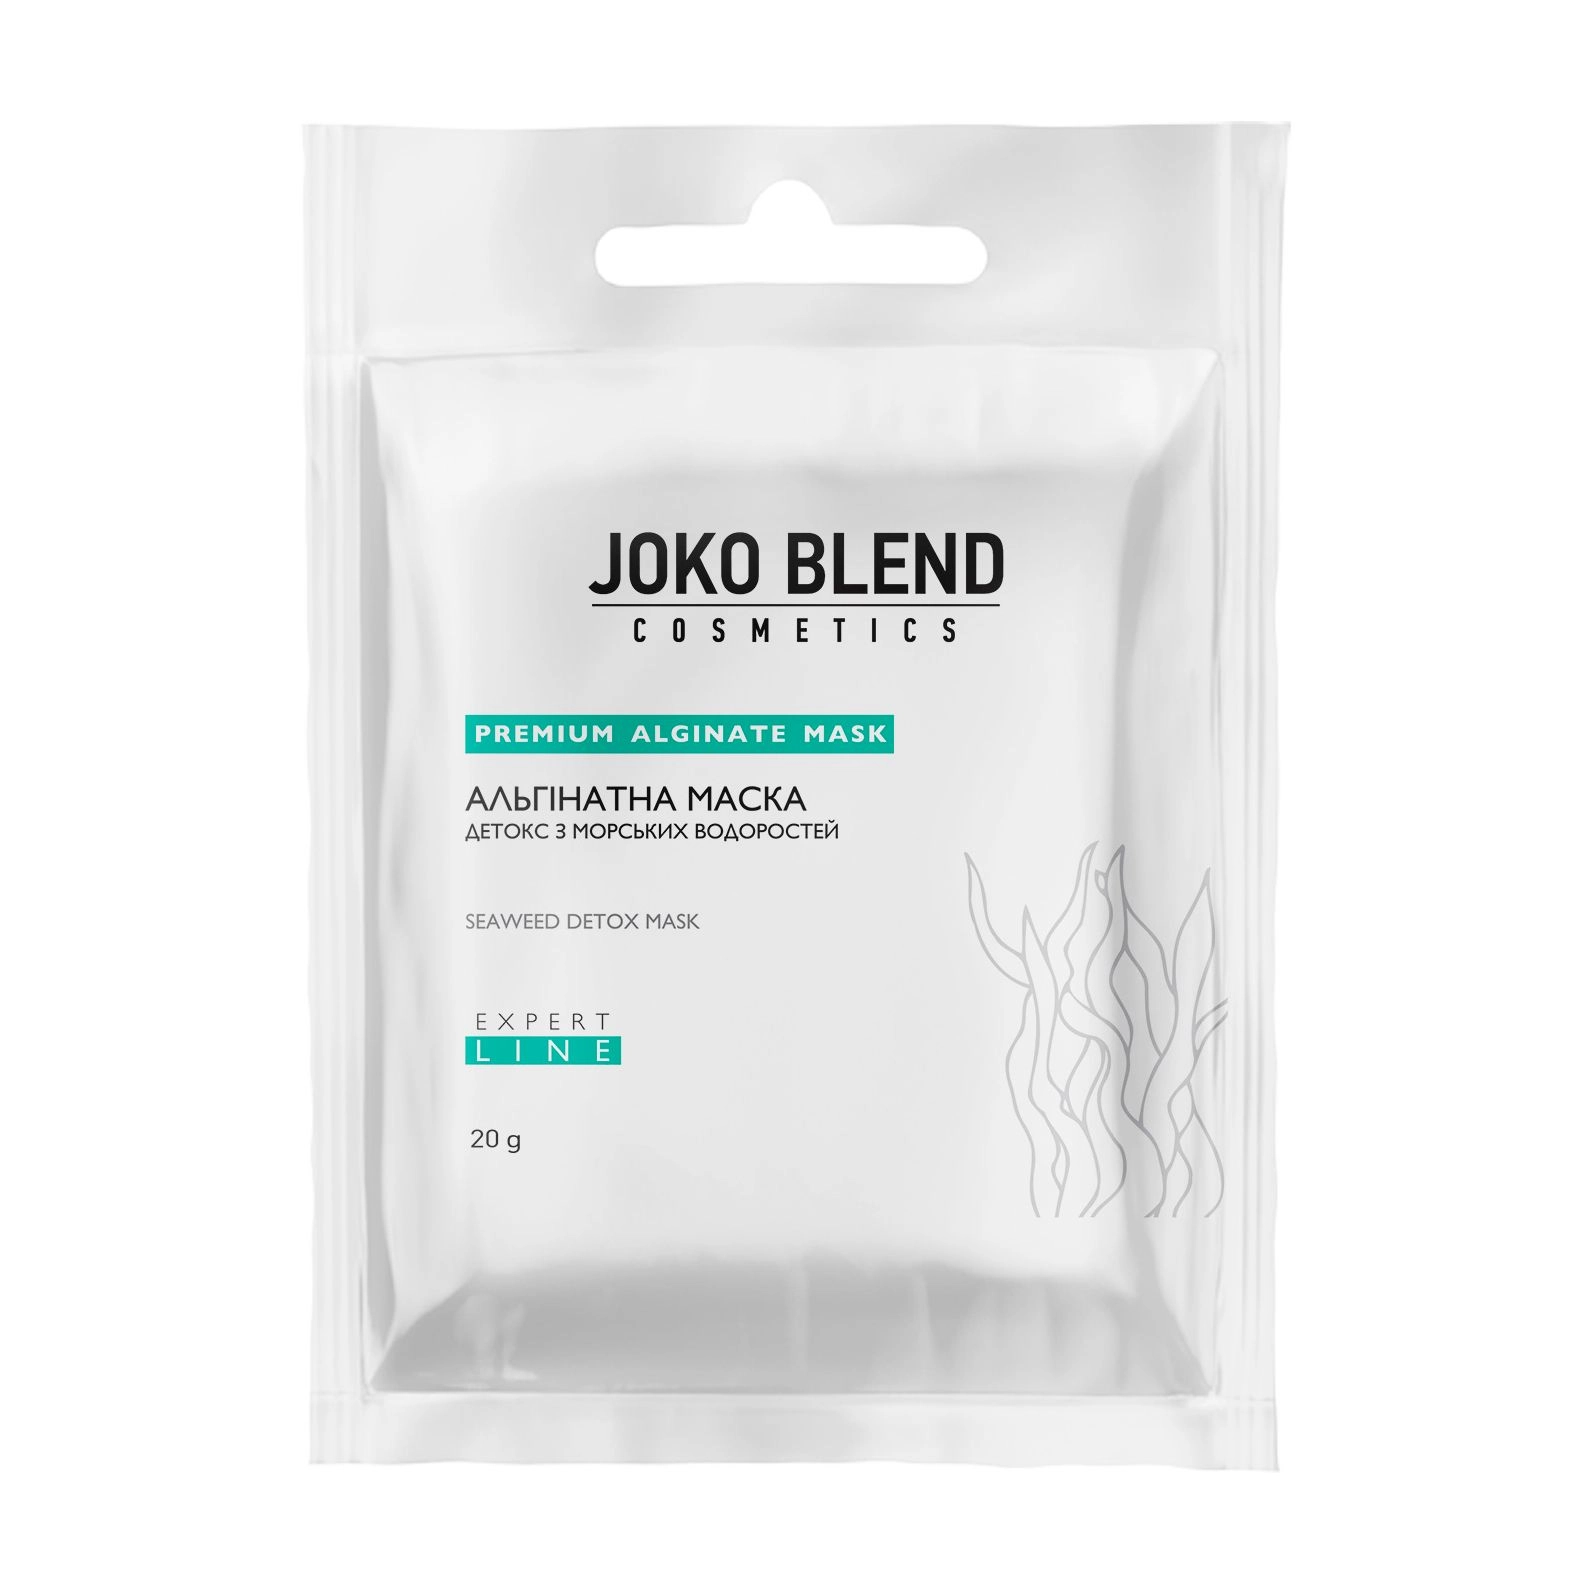 Альгинатная детокс маска с морскими водорослями - Joko Blend Premium Alginate Mask, 20 г - фото N4